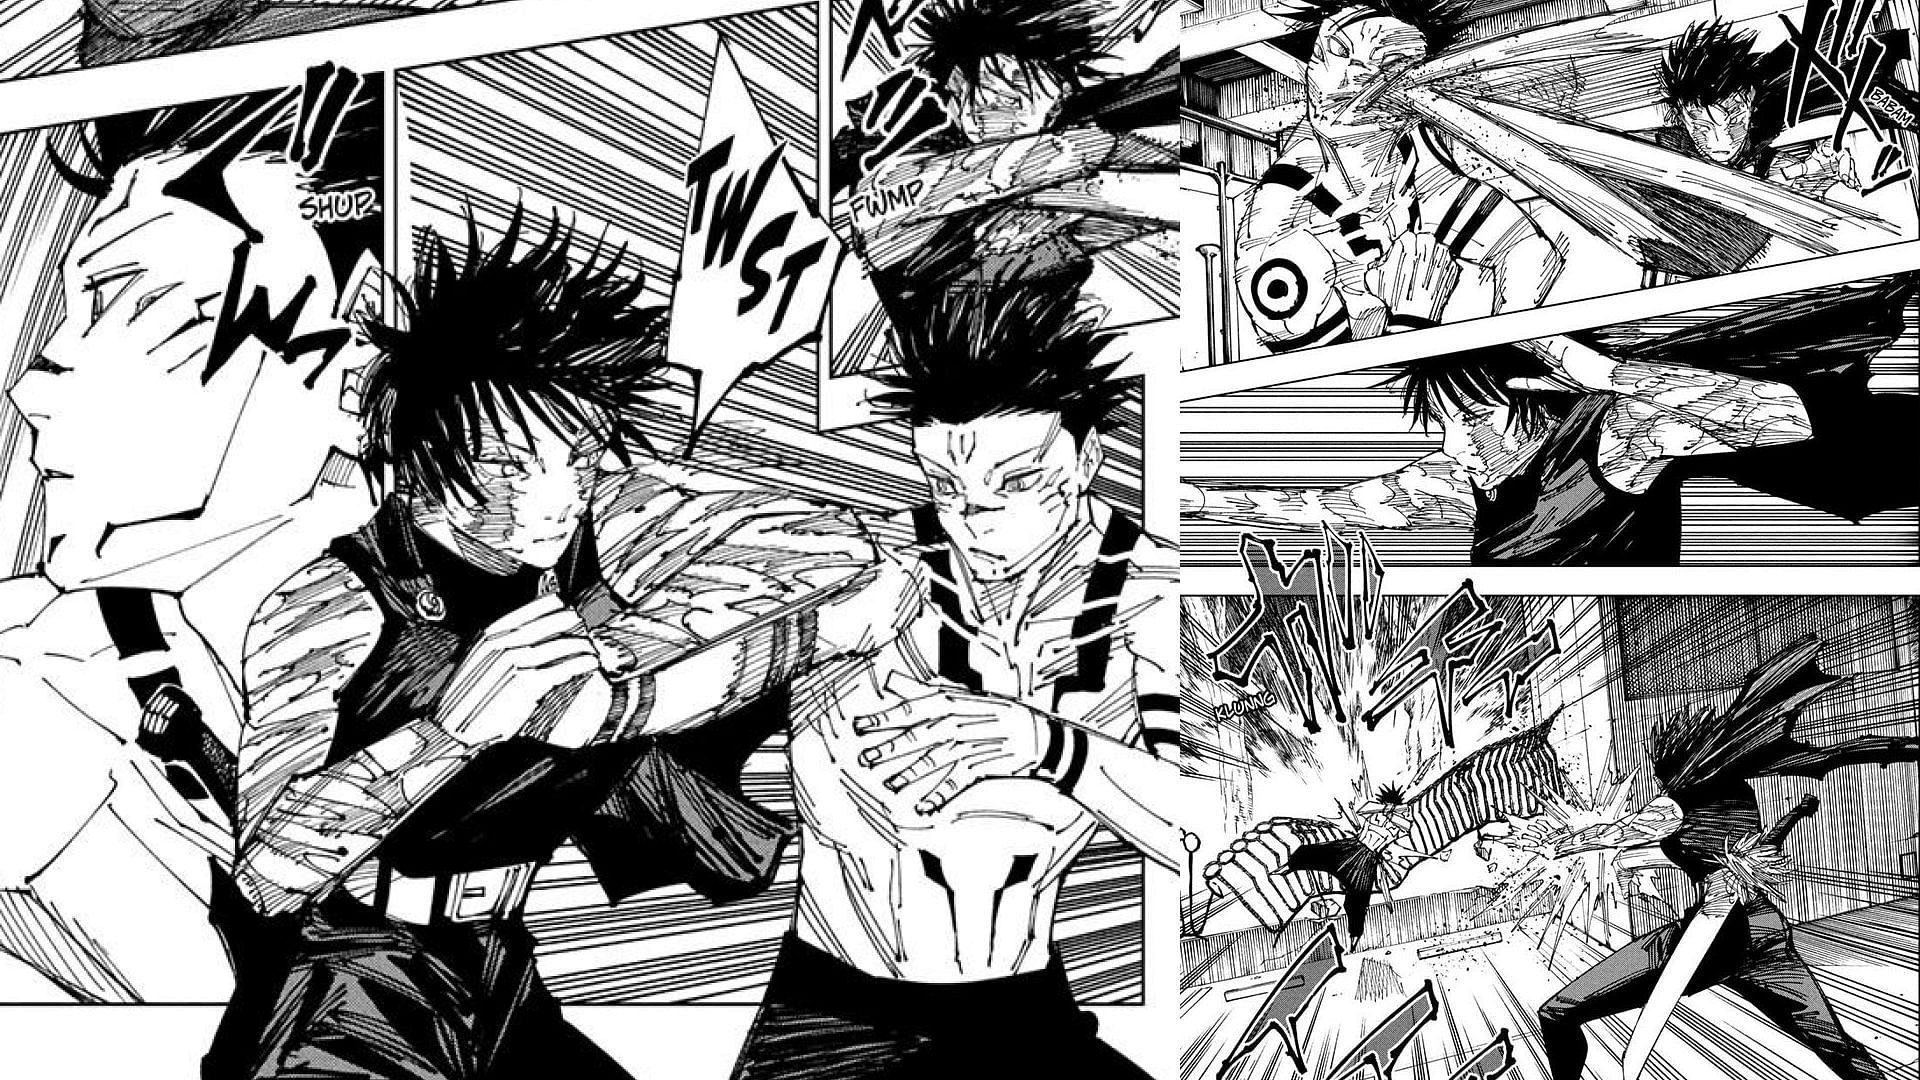 Maki fighting Sukuna in Jujutsu Kaisen chapter 215 (Image via Akutami Gege/Shueisha)